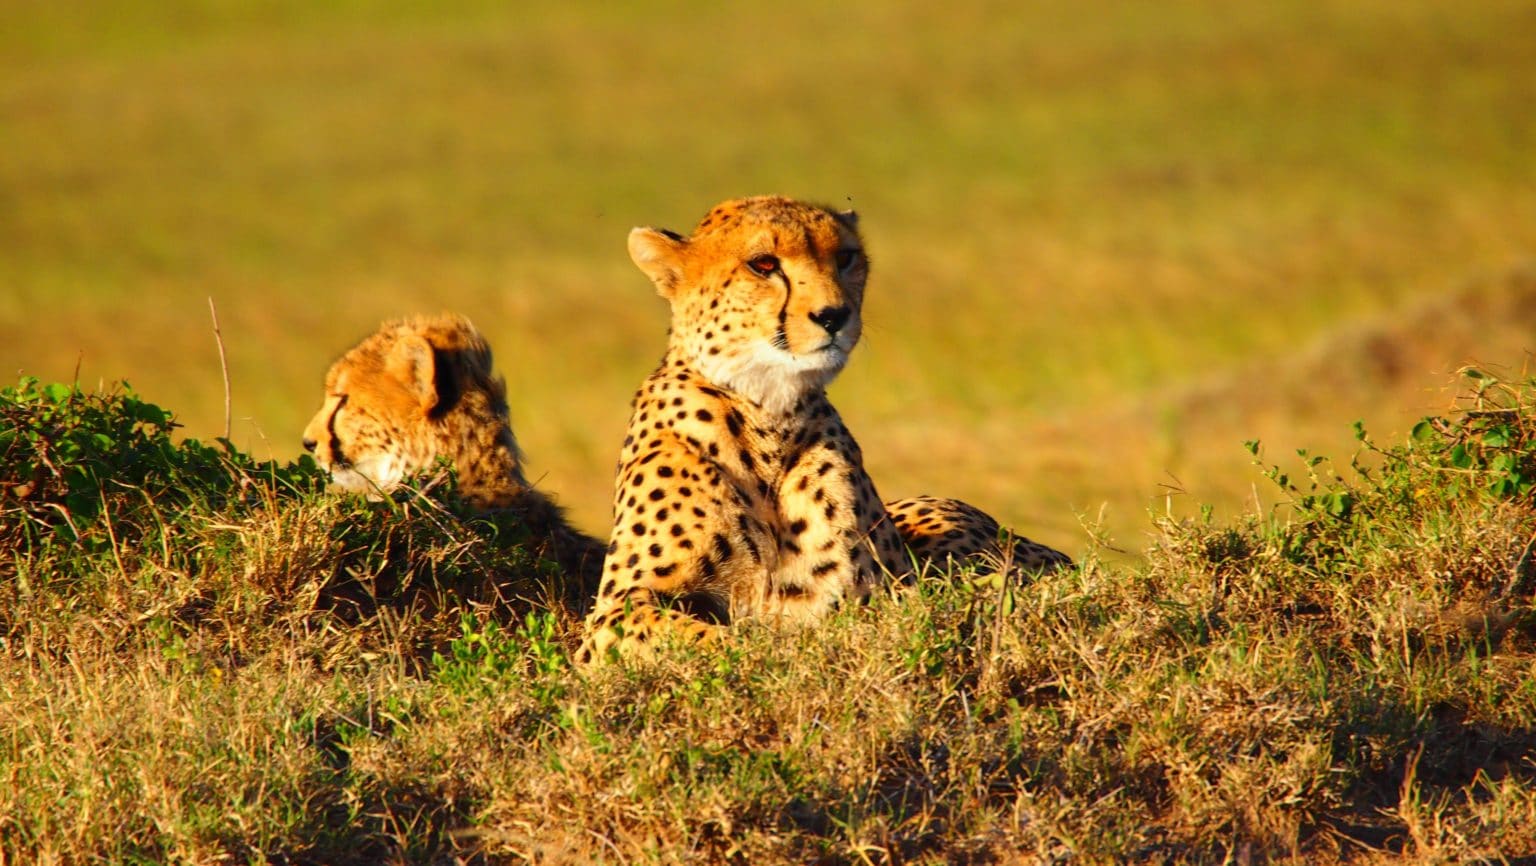 A baby cheetah